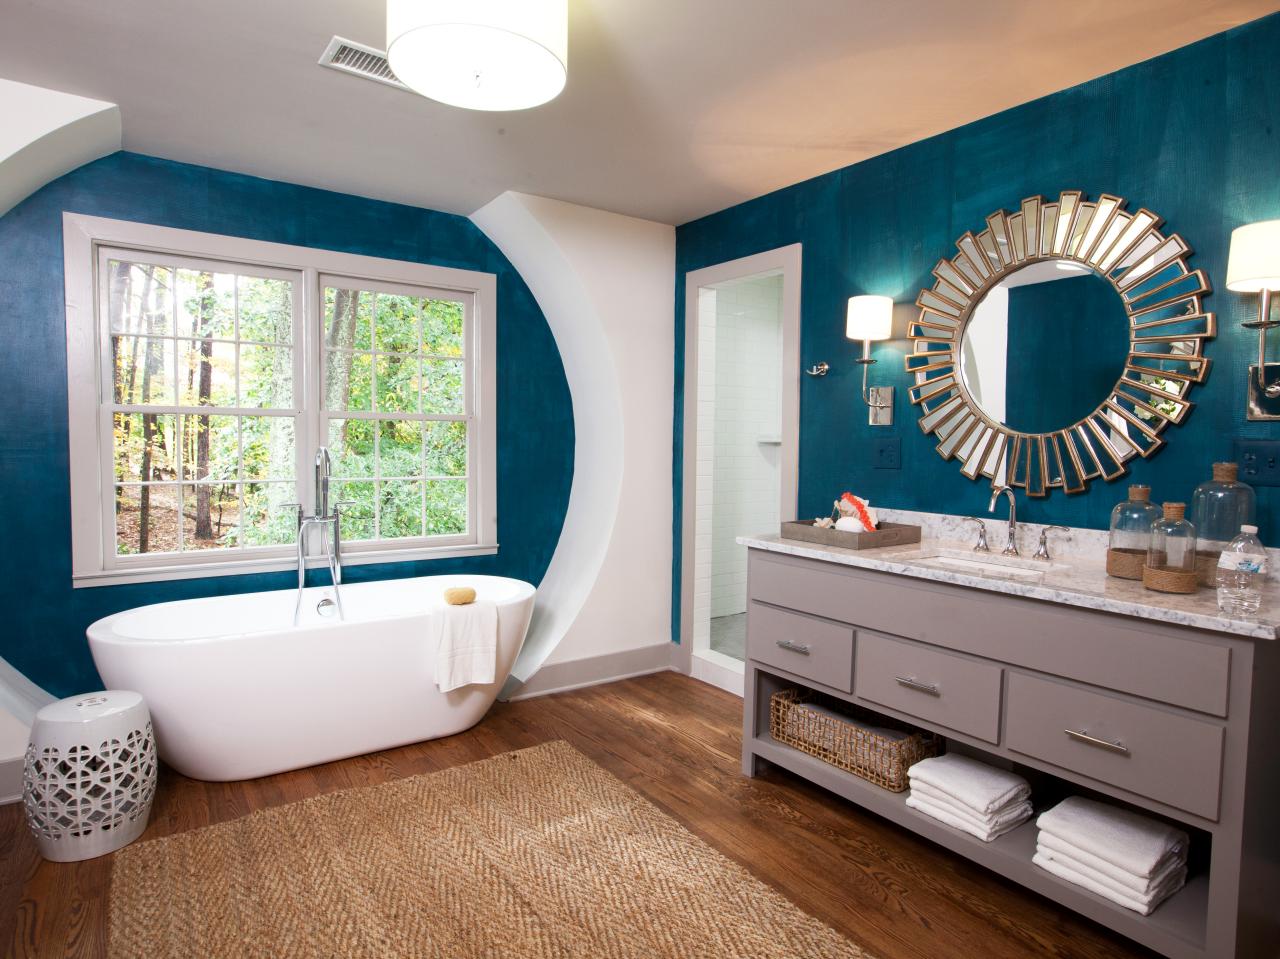 màu sơn nhà tắm xanh ngọc lam tông đậm cho không gian thêm sang trọng, hiện đại